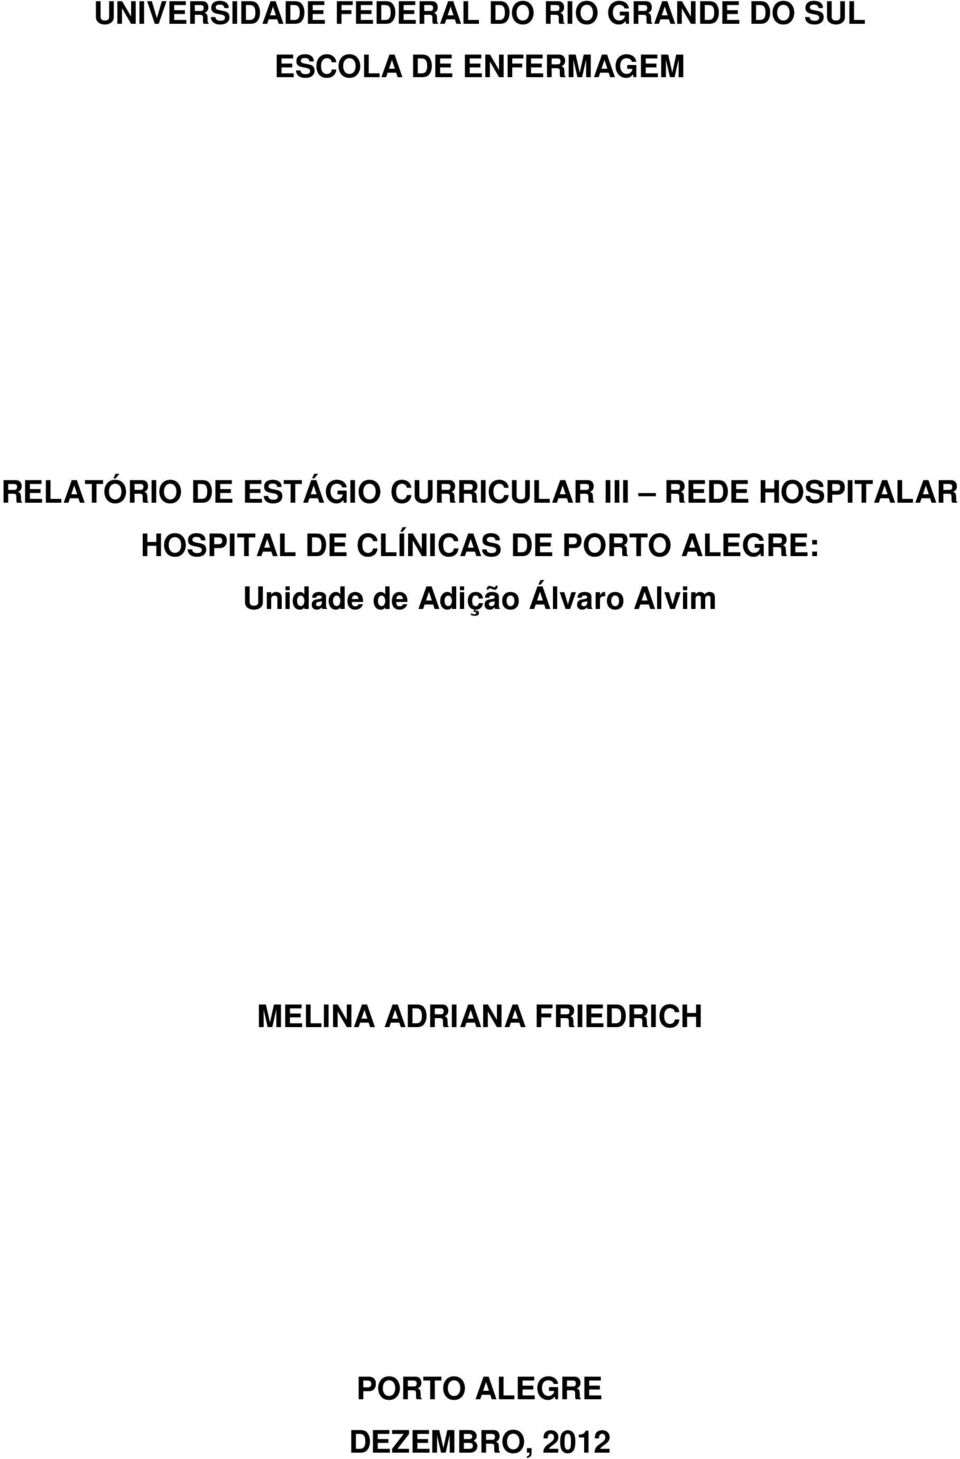 HOSPITALAR HOSPITAL DE CLÍNICAS DE PORTO ALEGRE: Unidade de